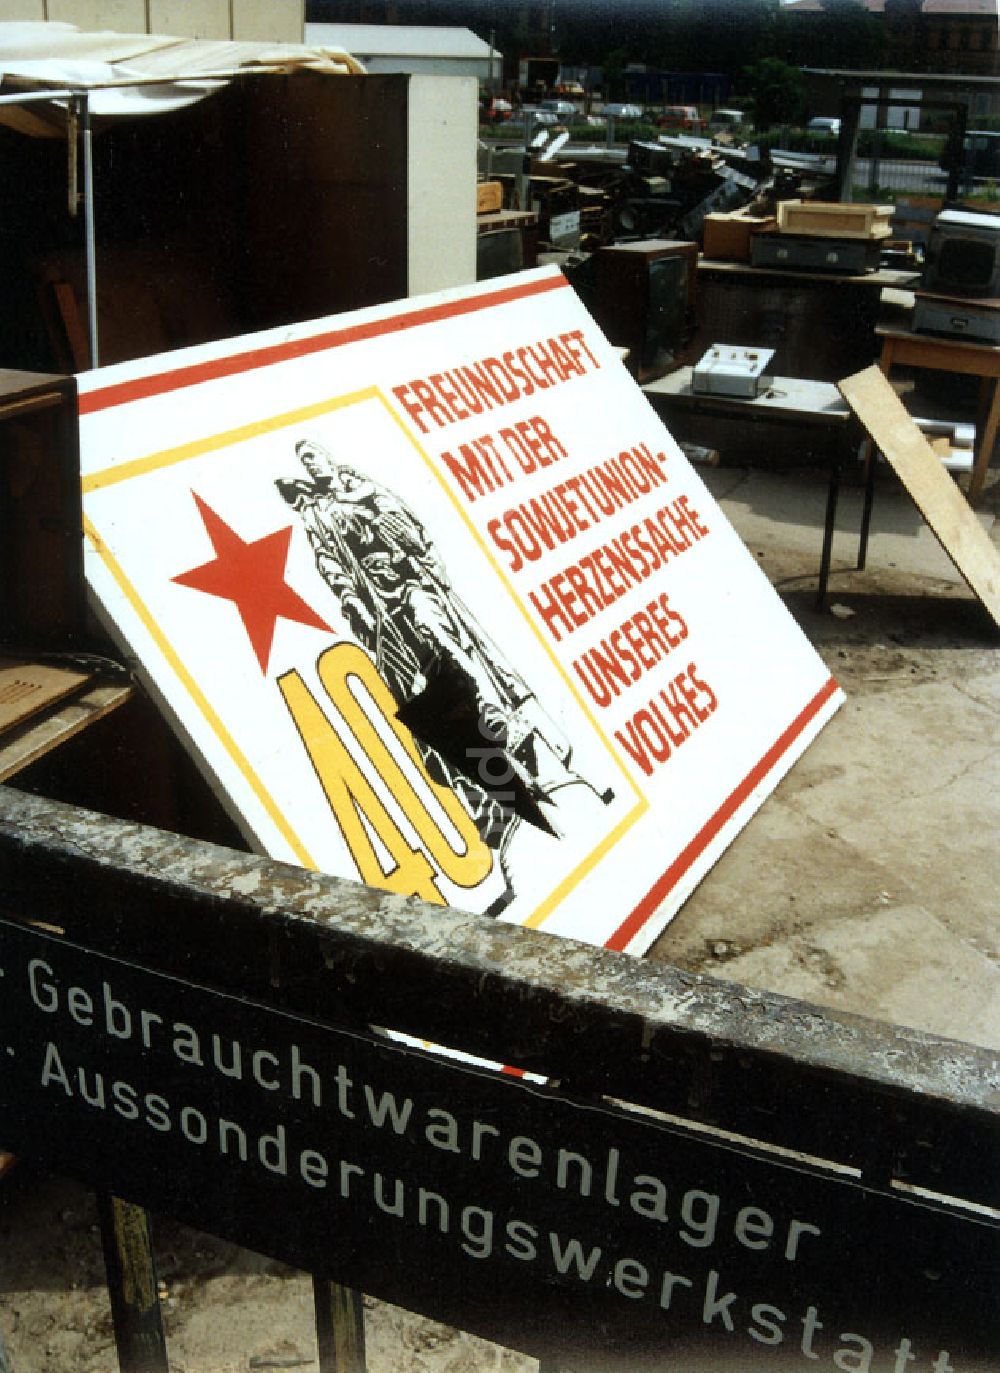 Magdeburg: Magdeburg: Gebrauchtwarenlager der Geschichte auf dem Gelände der Technischen Universität Magdeburg 10.06.1992